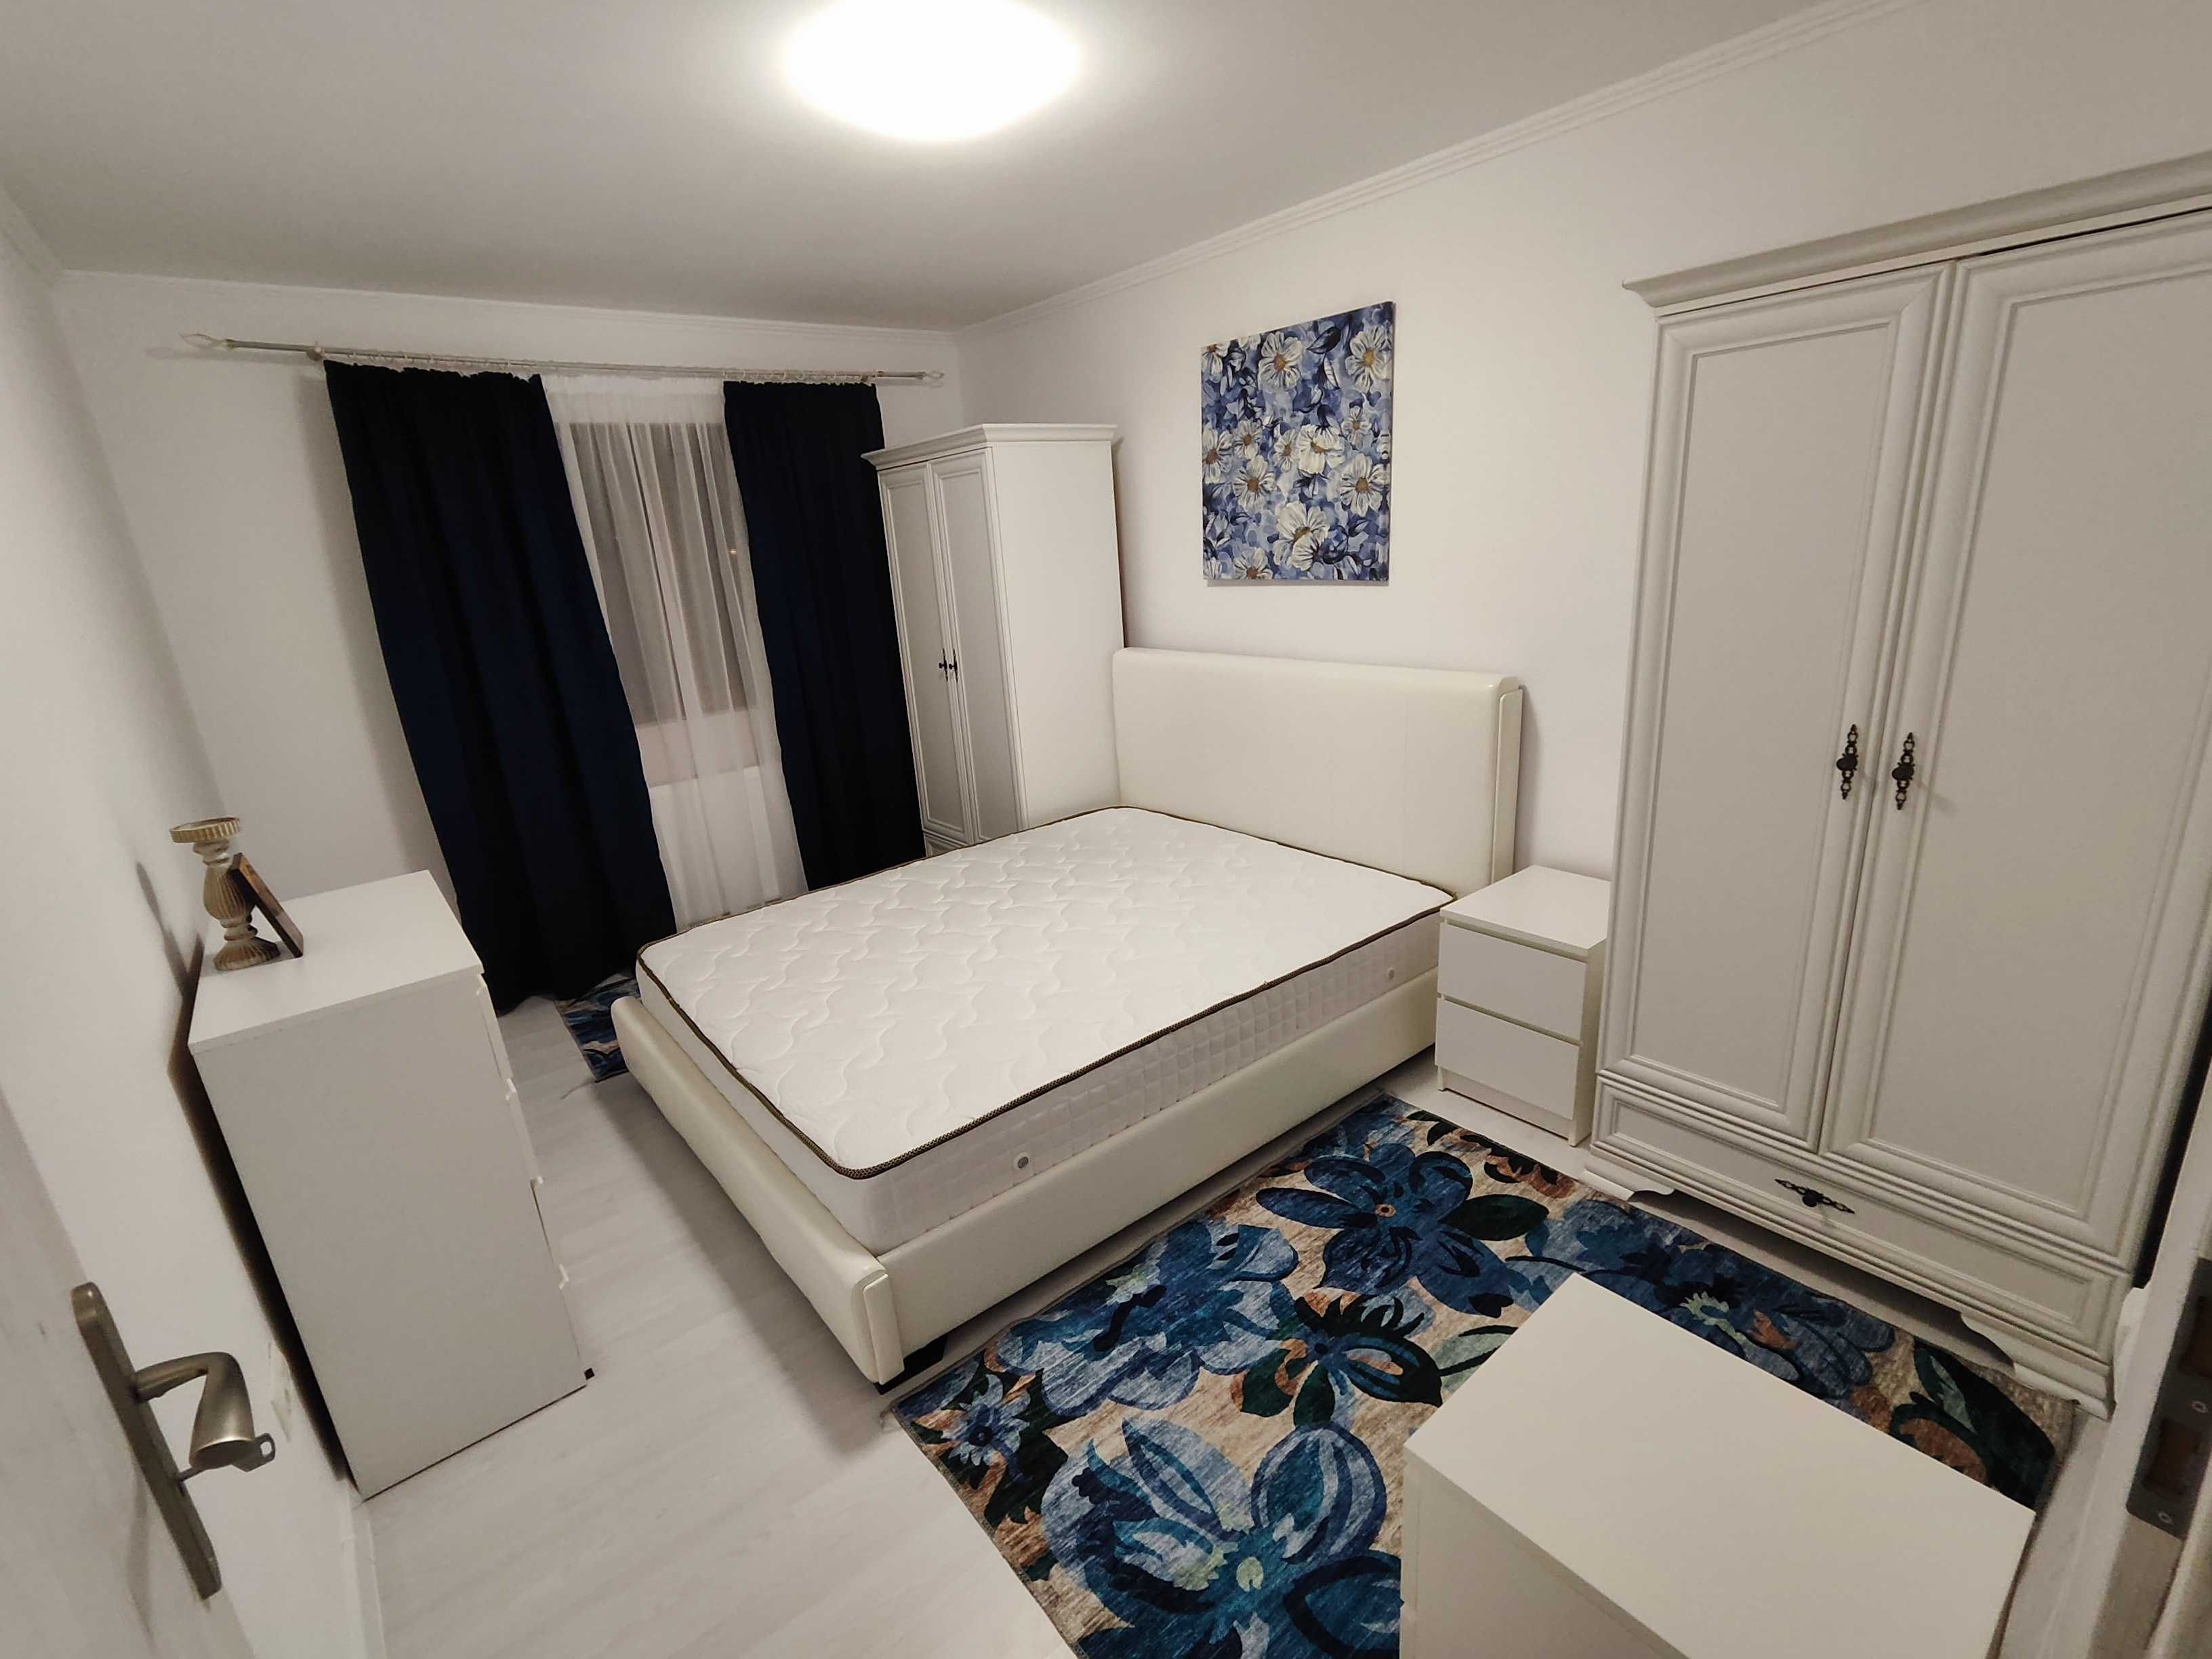 Inchiriez apartament superb,3 camere, nou, in vila sector 1 București.